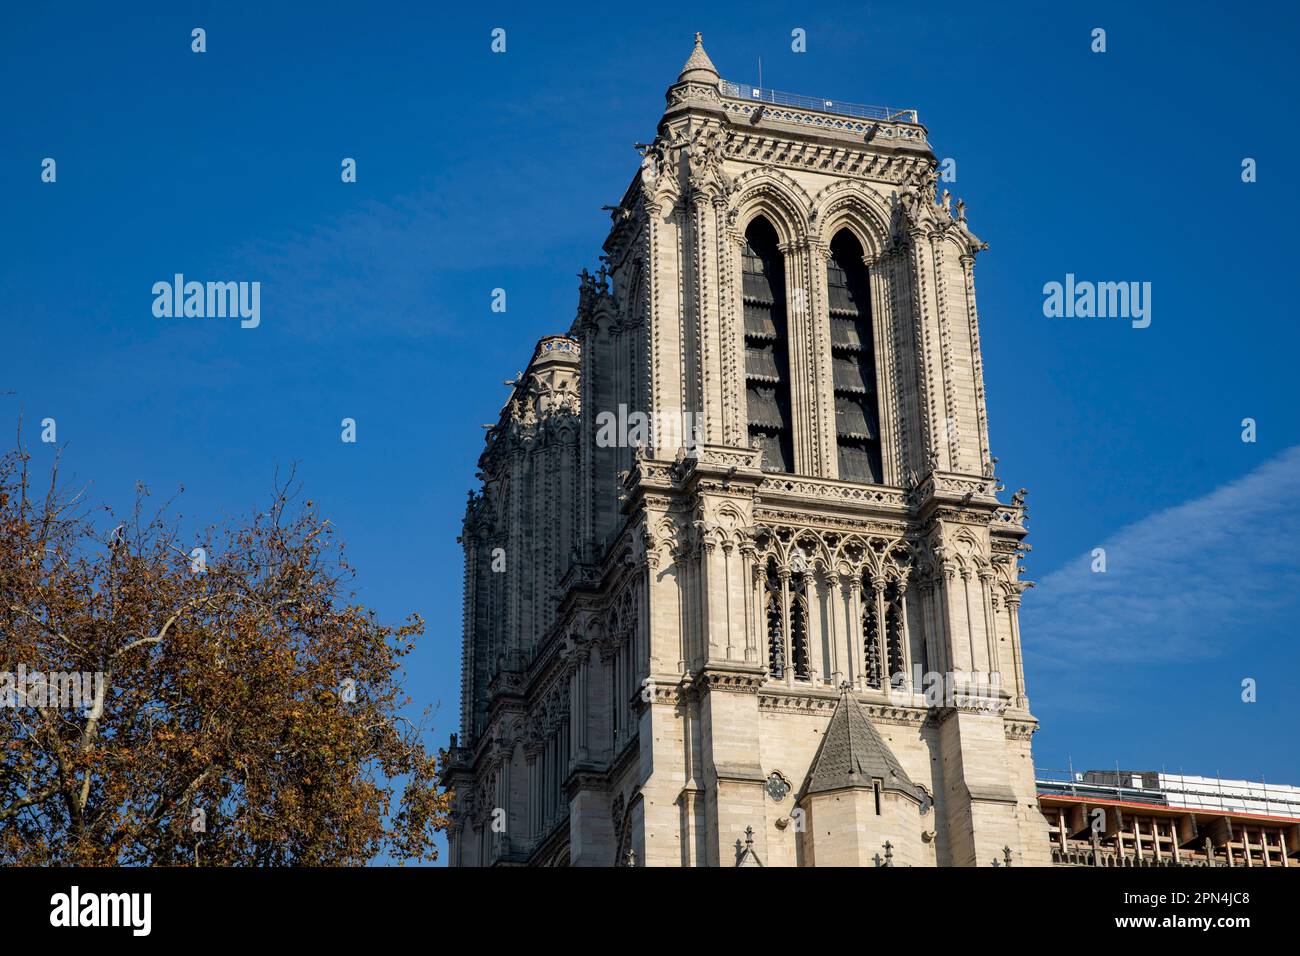 Südturm beim Besuch der Kathedrale Notre-Dame de Paris, in der am 15. April 2019 ein Großbrand entstanden war. Viele Teile des Dachstuhls verbrannten Stock Photo